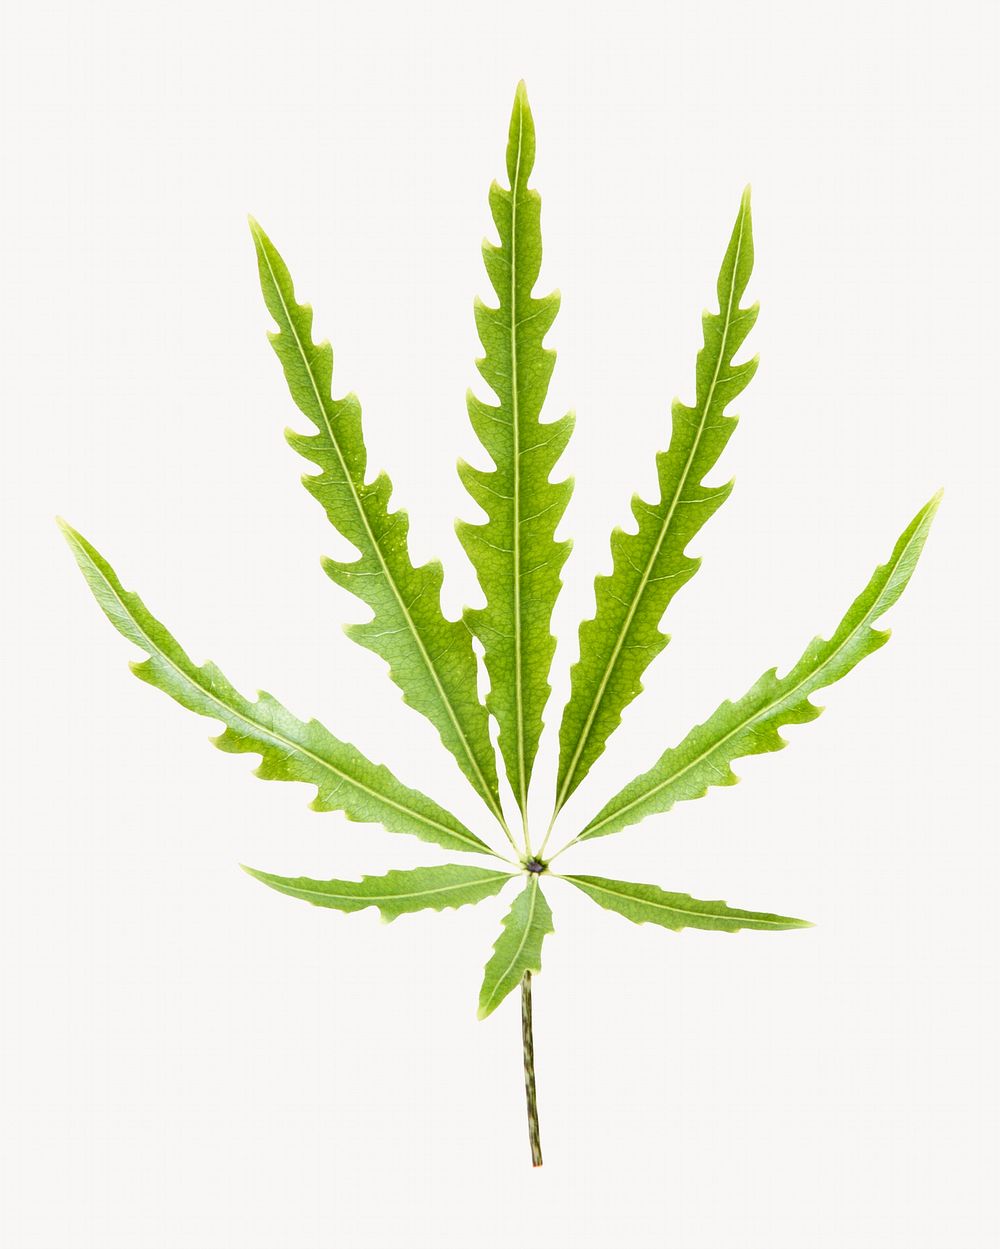 Marijuana leaf, plant, isolated botanical image